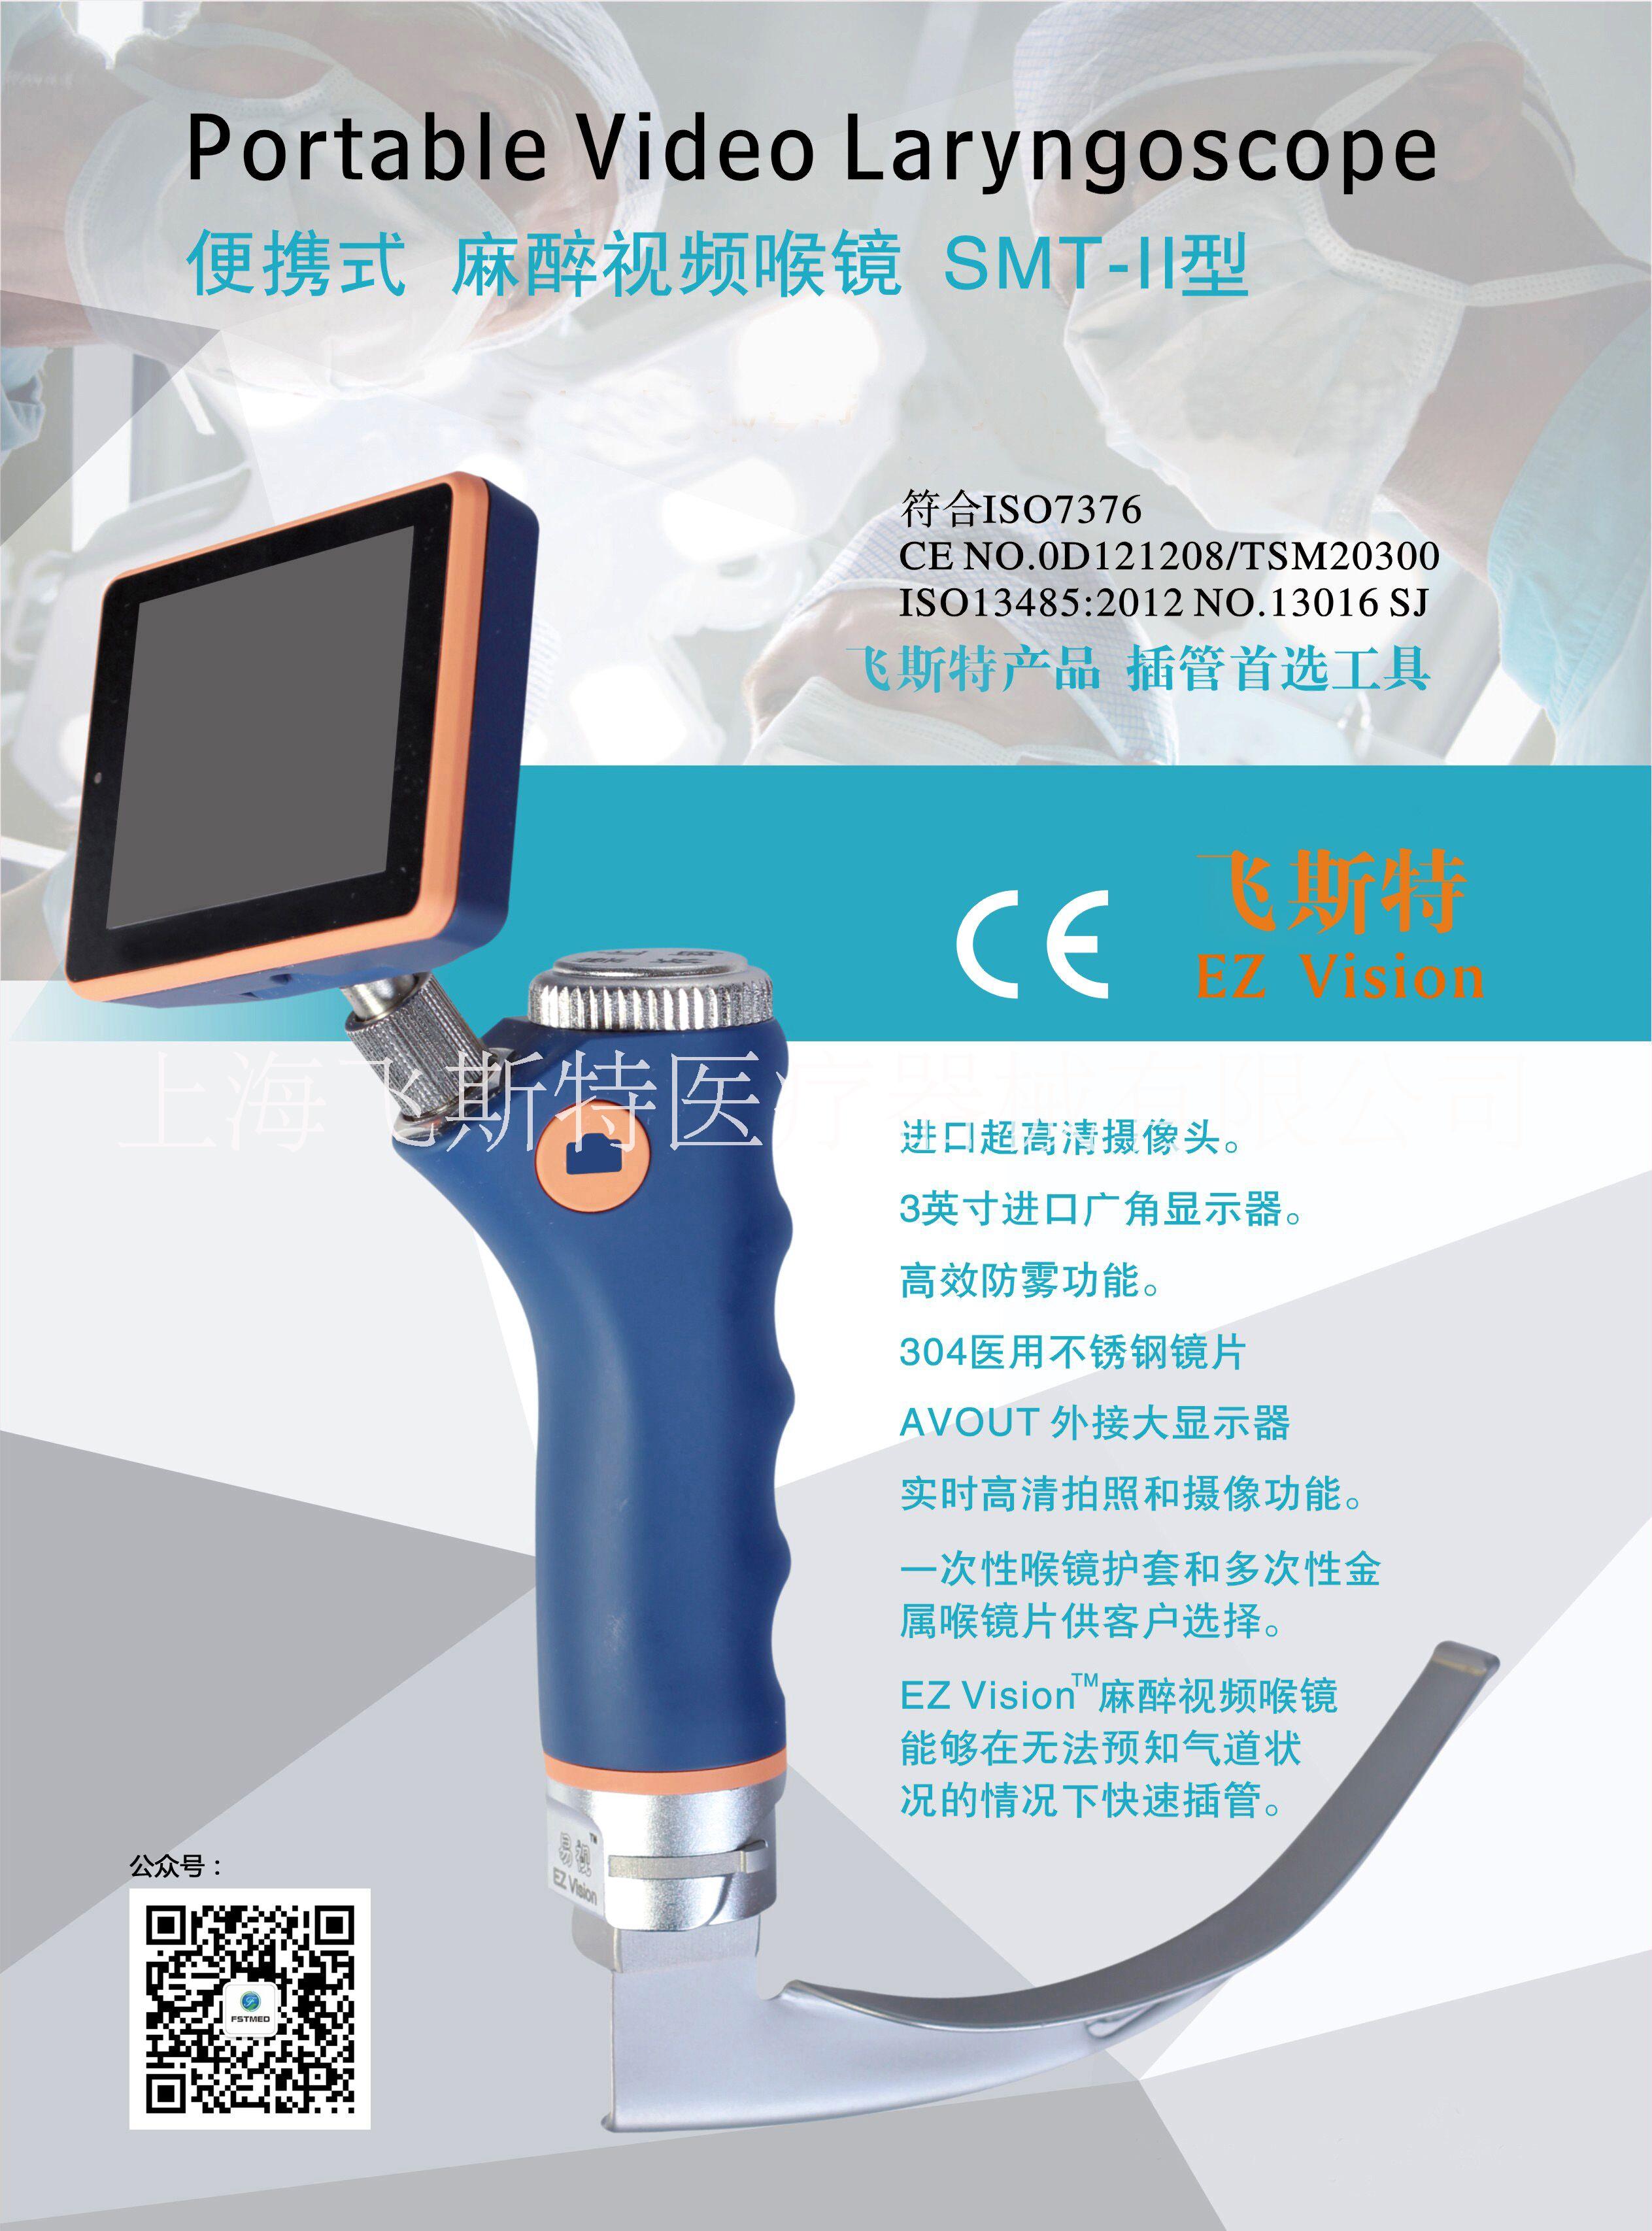 上海市供应视频喉镜飞斯特可视喉镜厂家